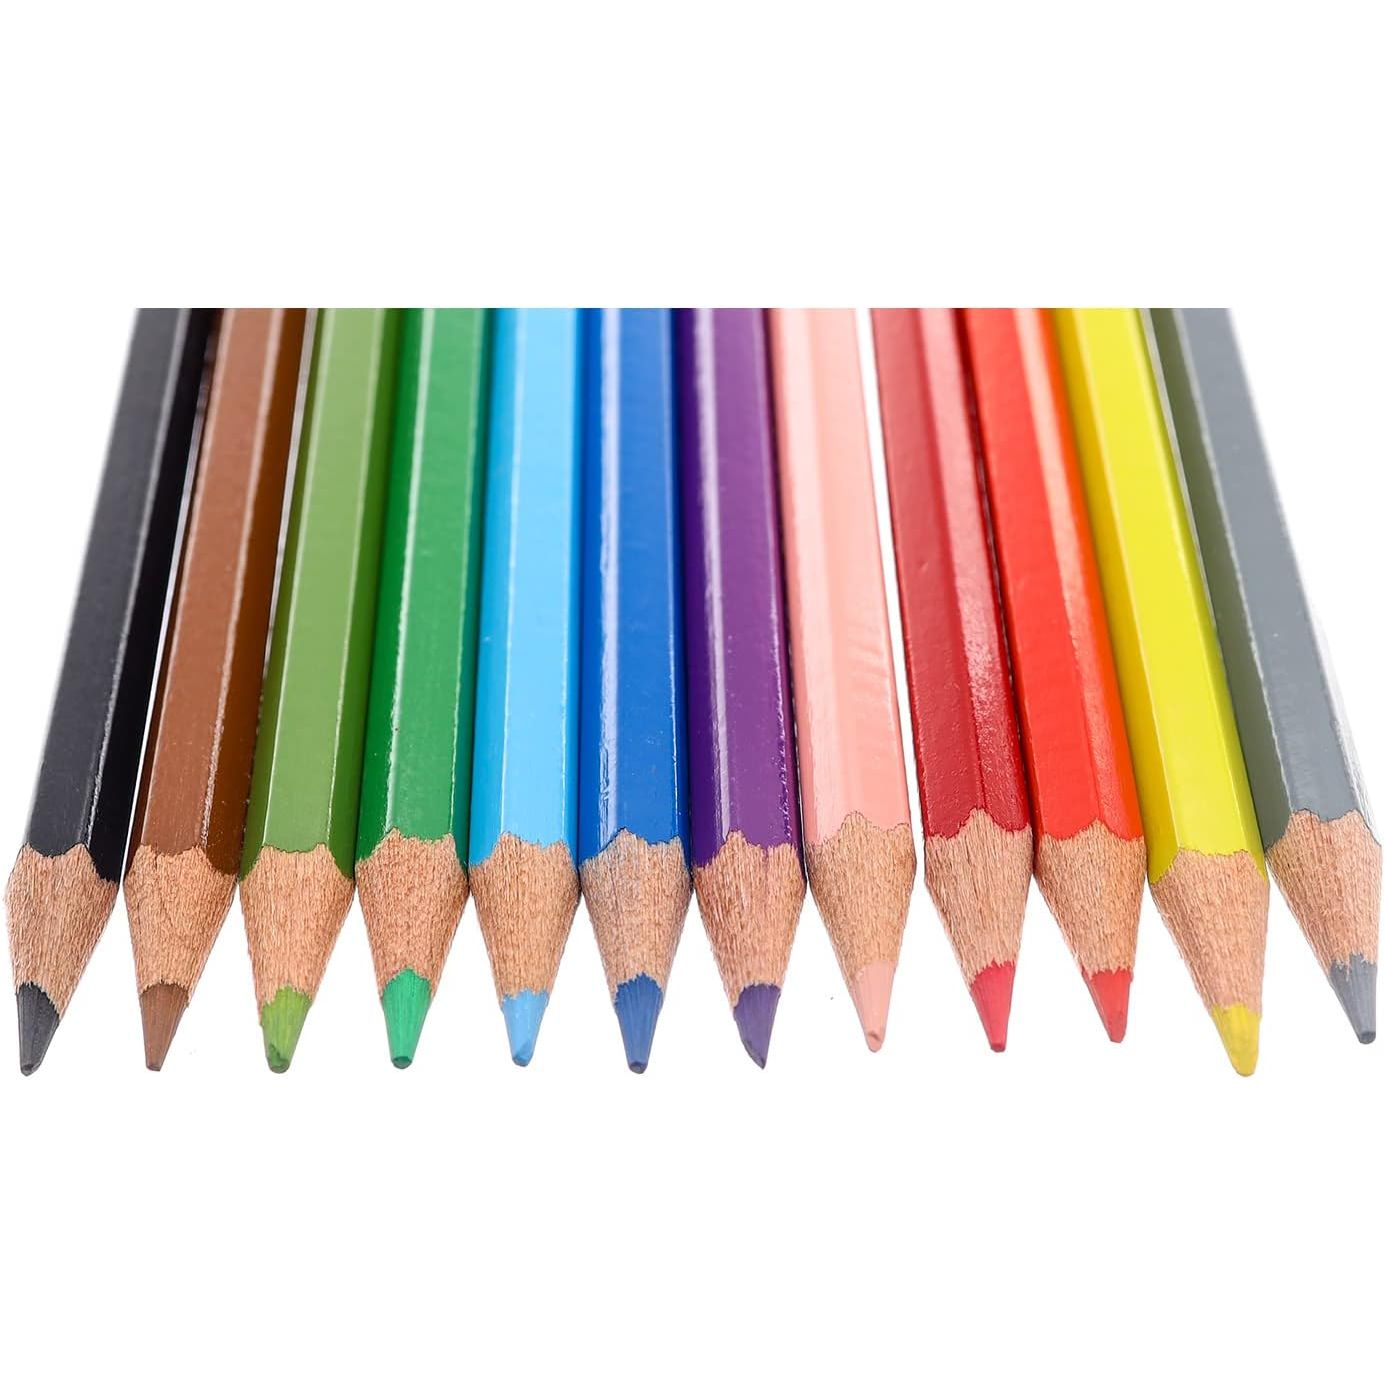 أقلام تلوين خشبية طويلة من فابر كاستل 12 قلم تلوين - متعددة الألوان